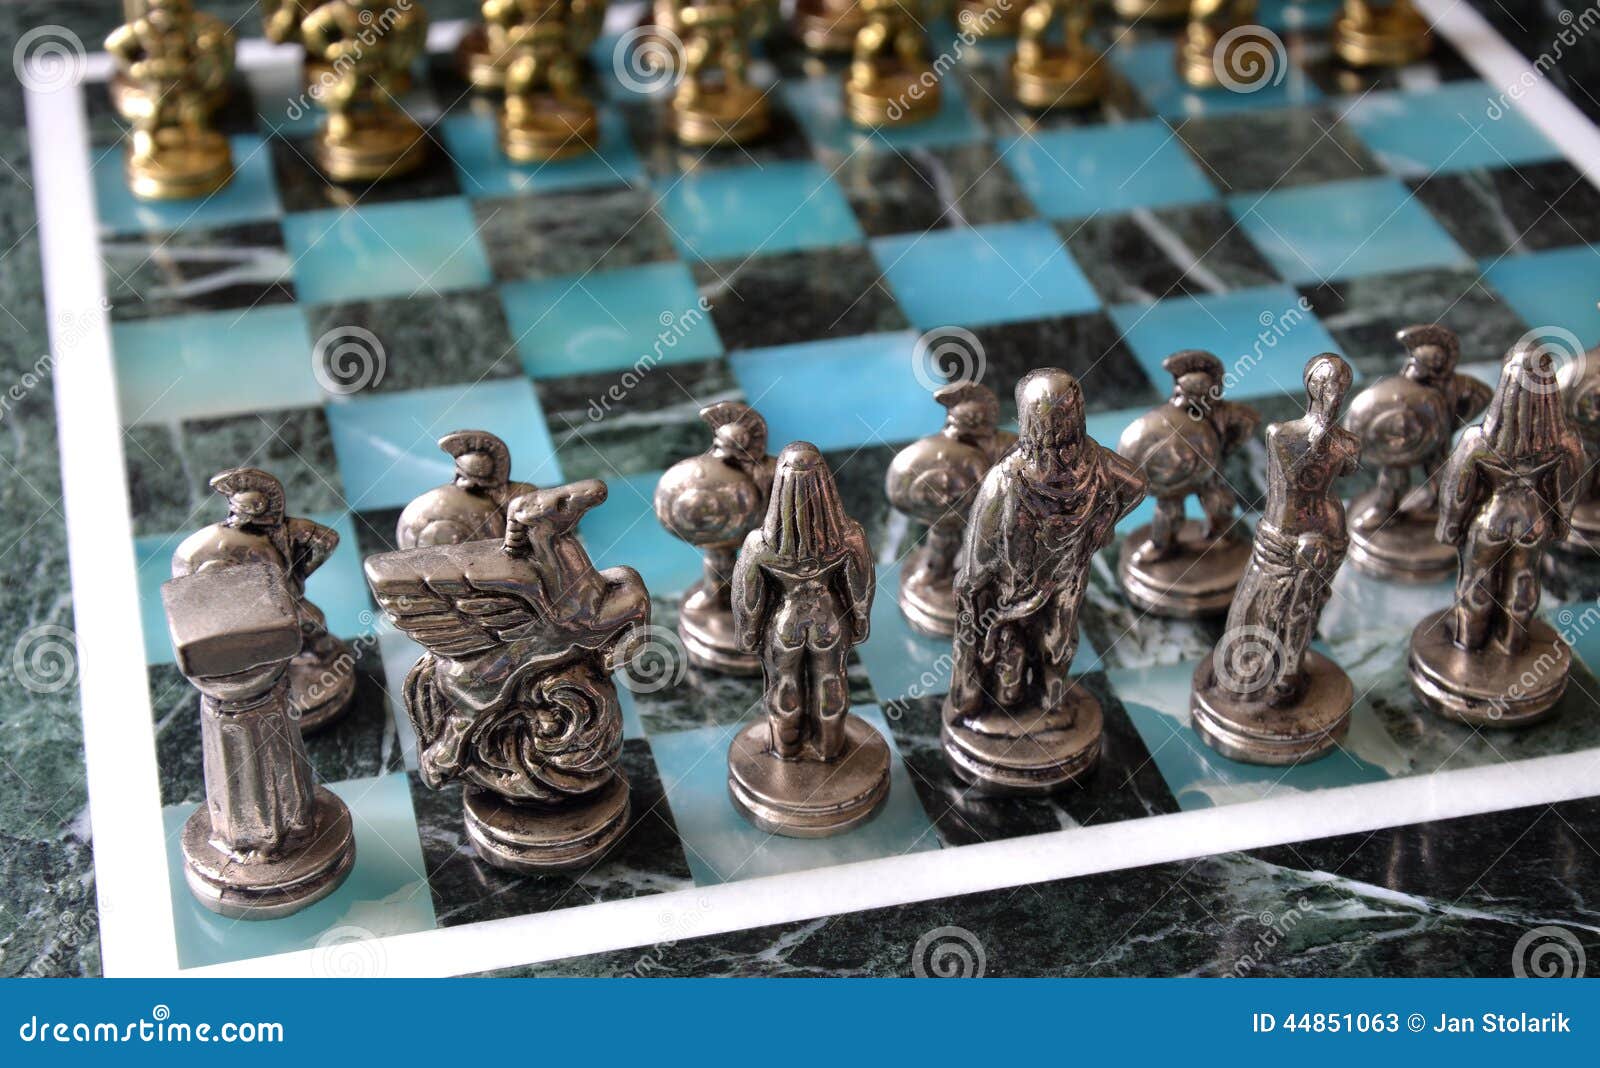 Juegos de Mesa de ajedrez de Viaje de Mesa Juego de ajedrez de Madera magnético con cajón de Almacenamiento AIKY Juego de ajedrez de Lujo Juguete de ajedrez portátil para niños o Adultos 